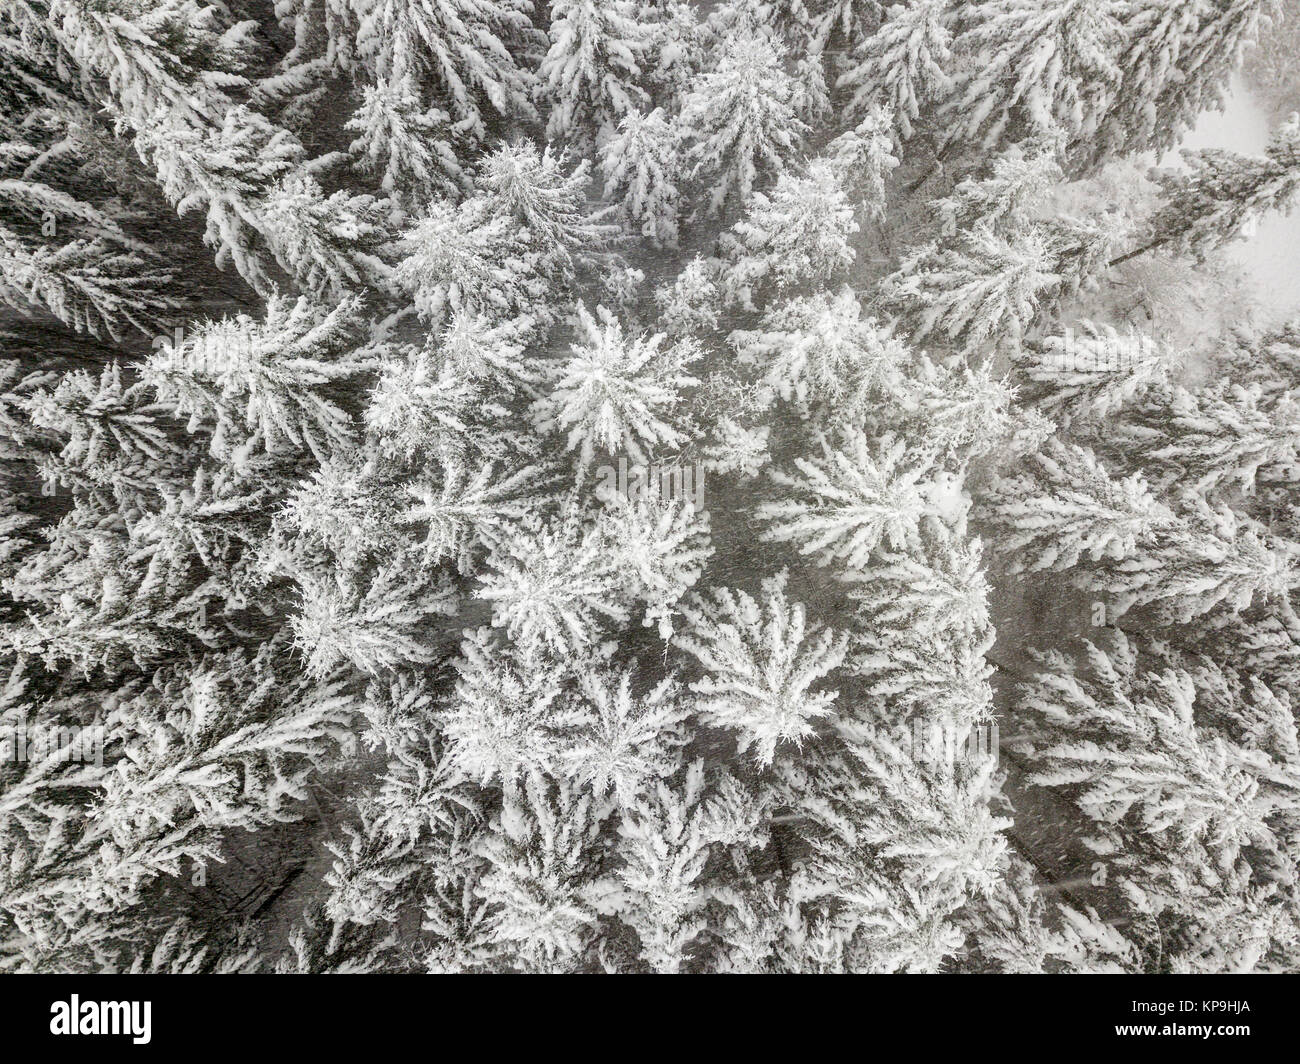 Las copas de los árboles cubiertos de nieve en un bosque invernal blanco Foto de stock